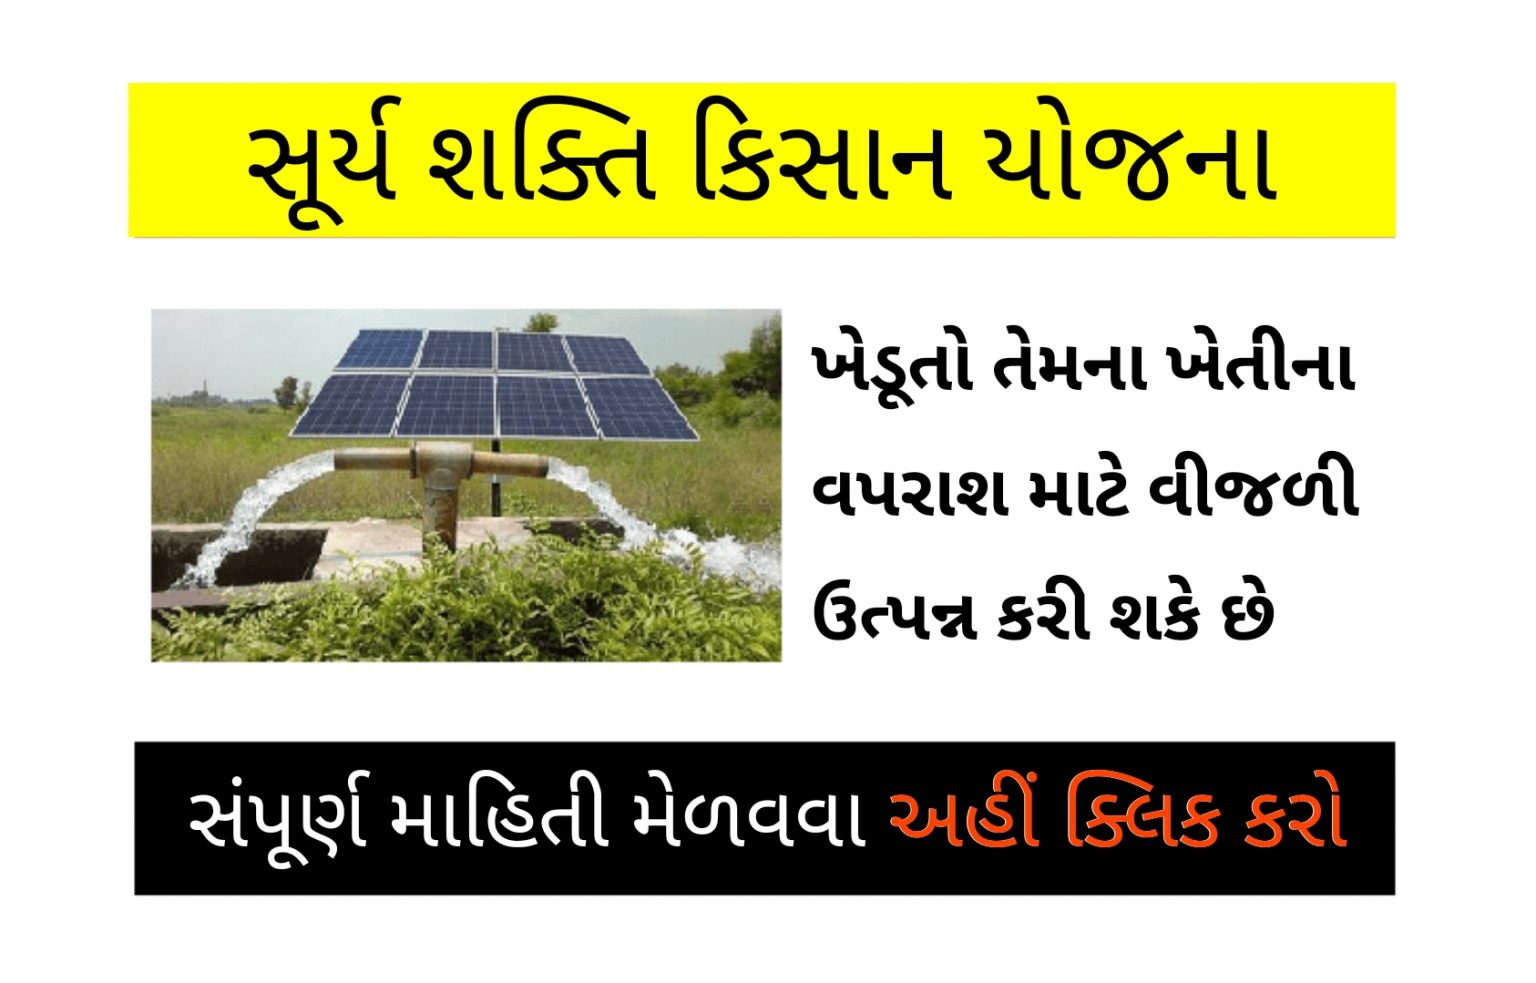 Surya Shakti Kisan Yojana 2022 Sky સૂર્ય શક્તિ કિસાન યોજના 2022 Vishwa Gujarat